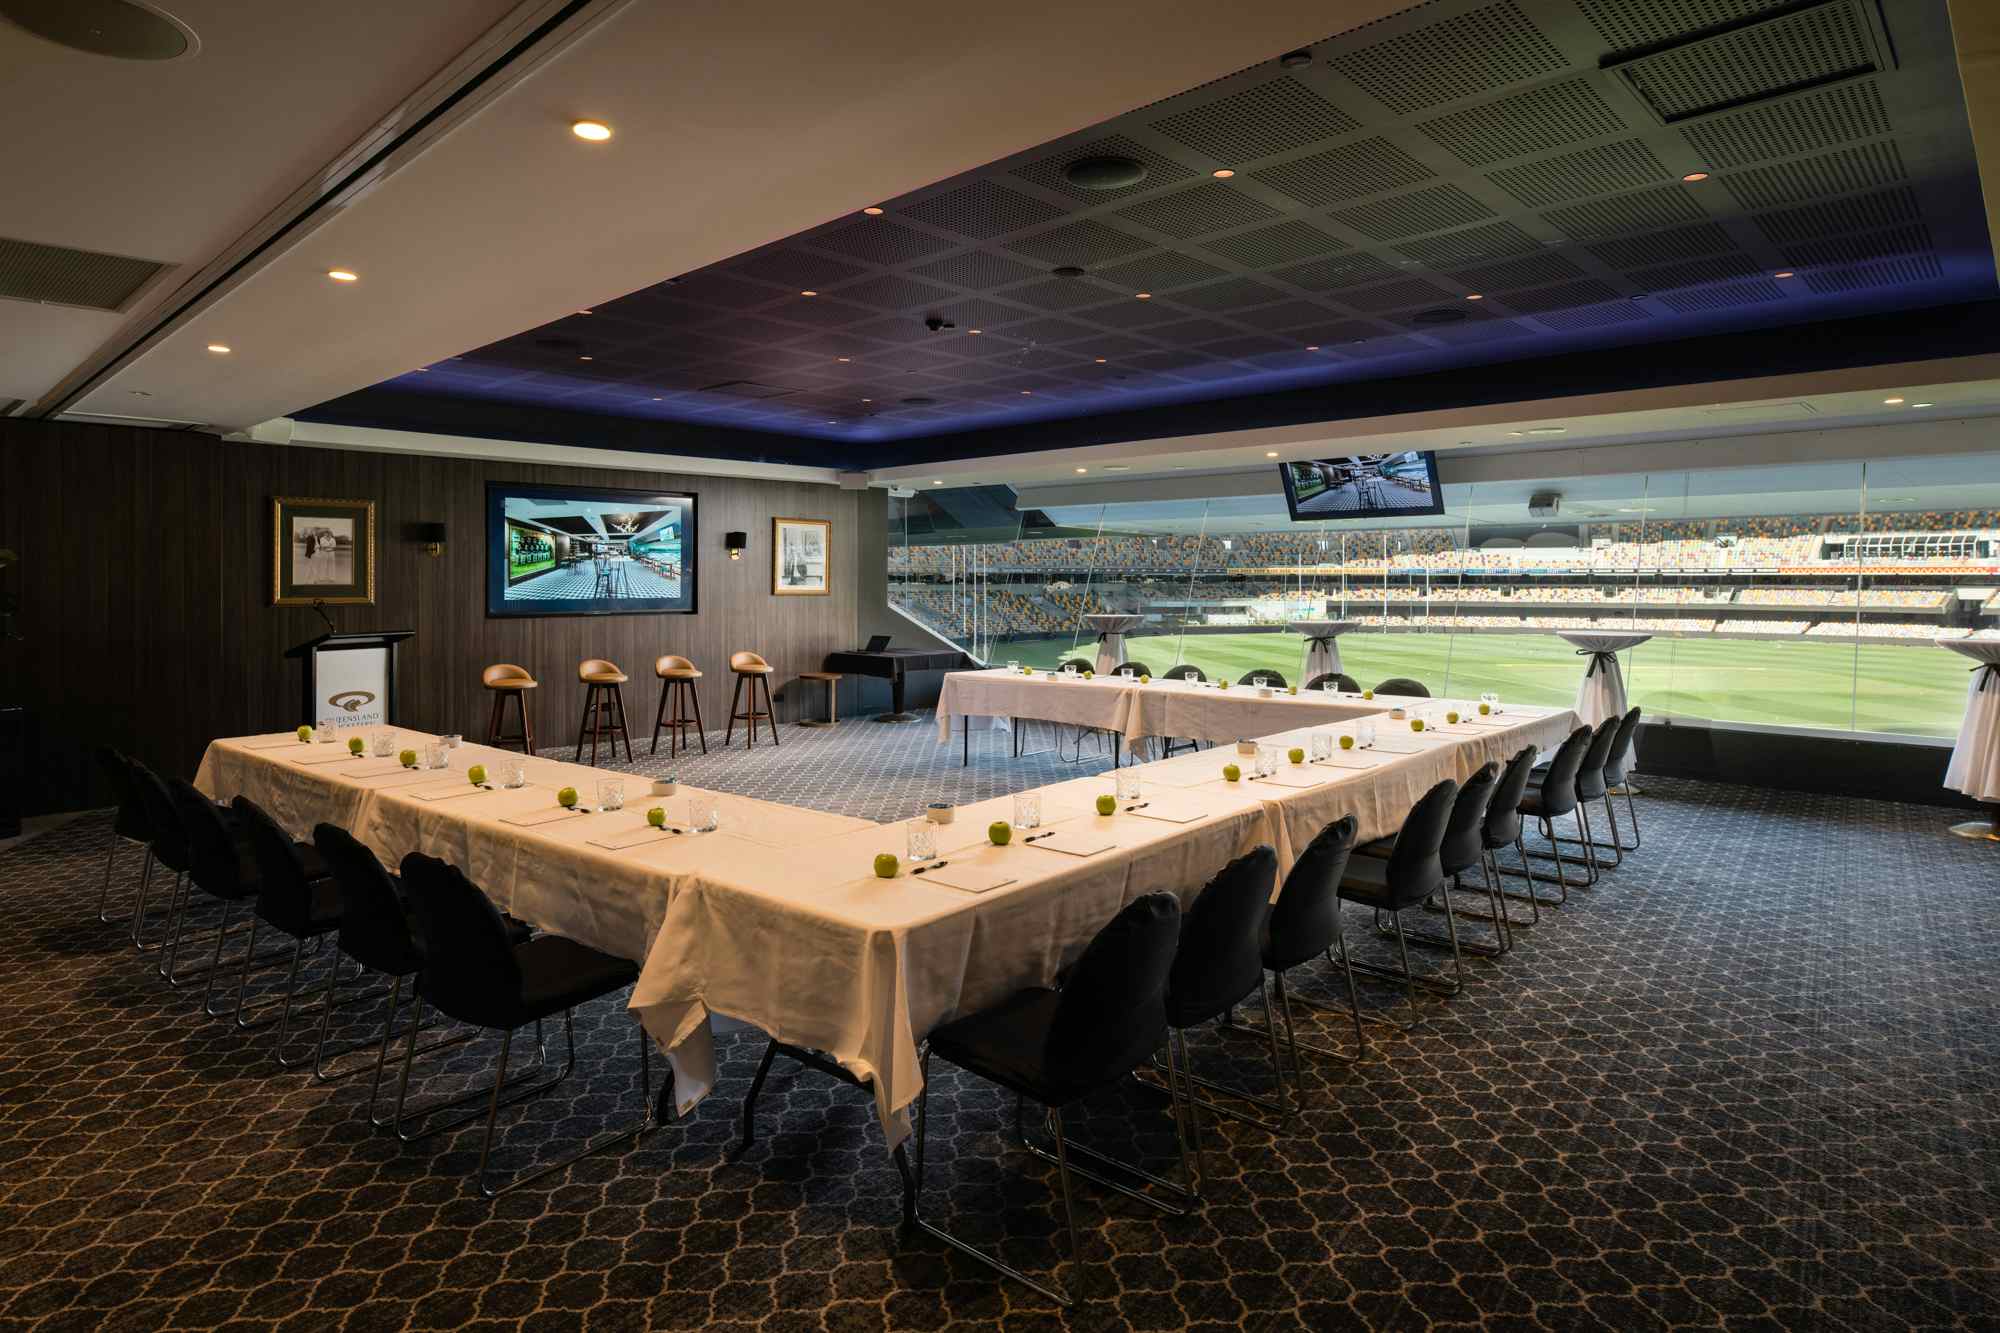 Mirror Room, Queensland Cricketers' Club